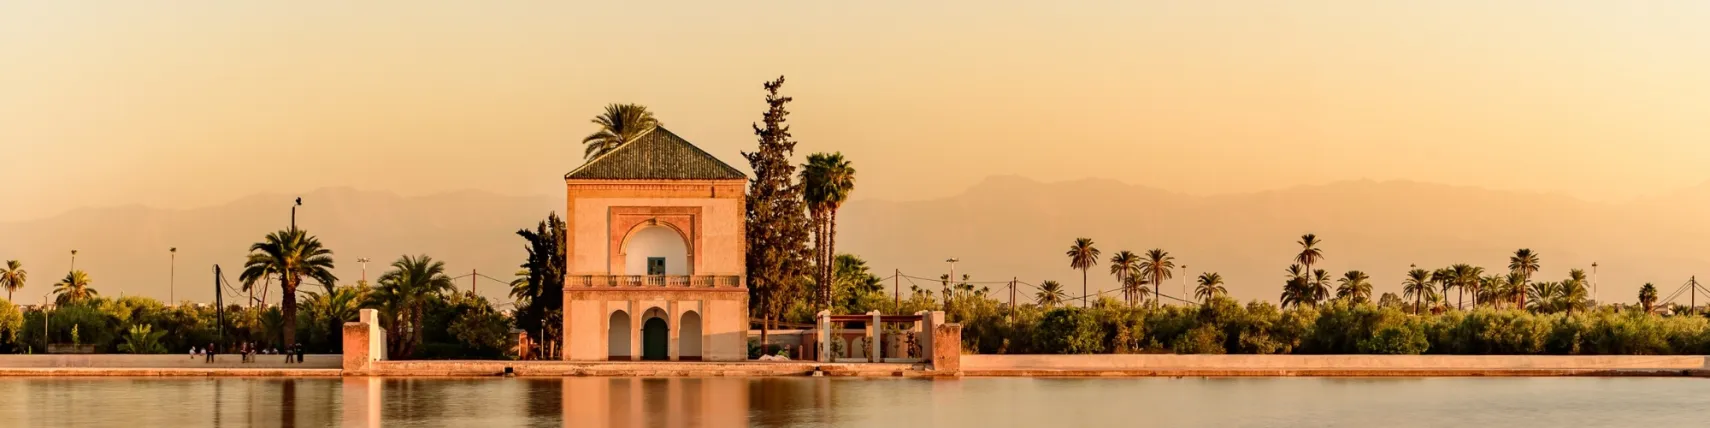 Blick auf ein Haus in Marrakesch